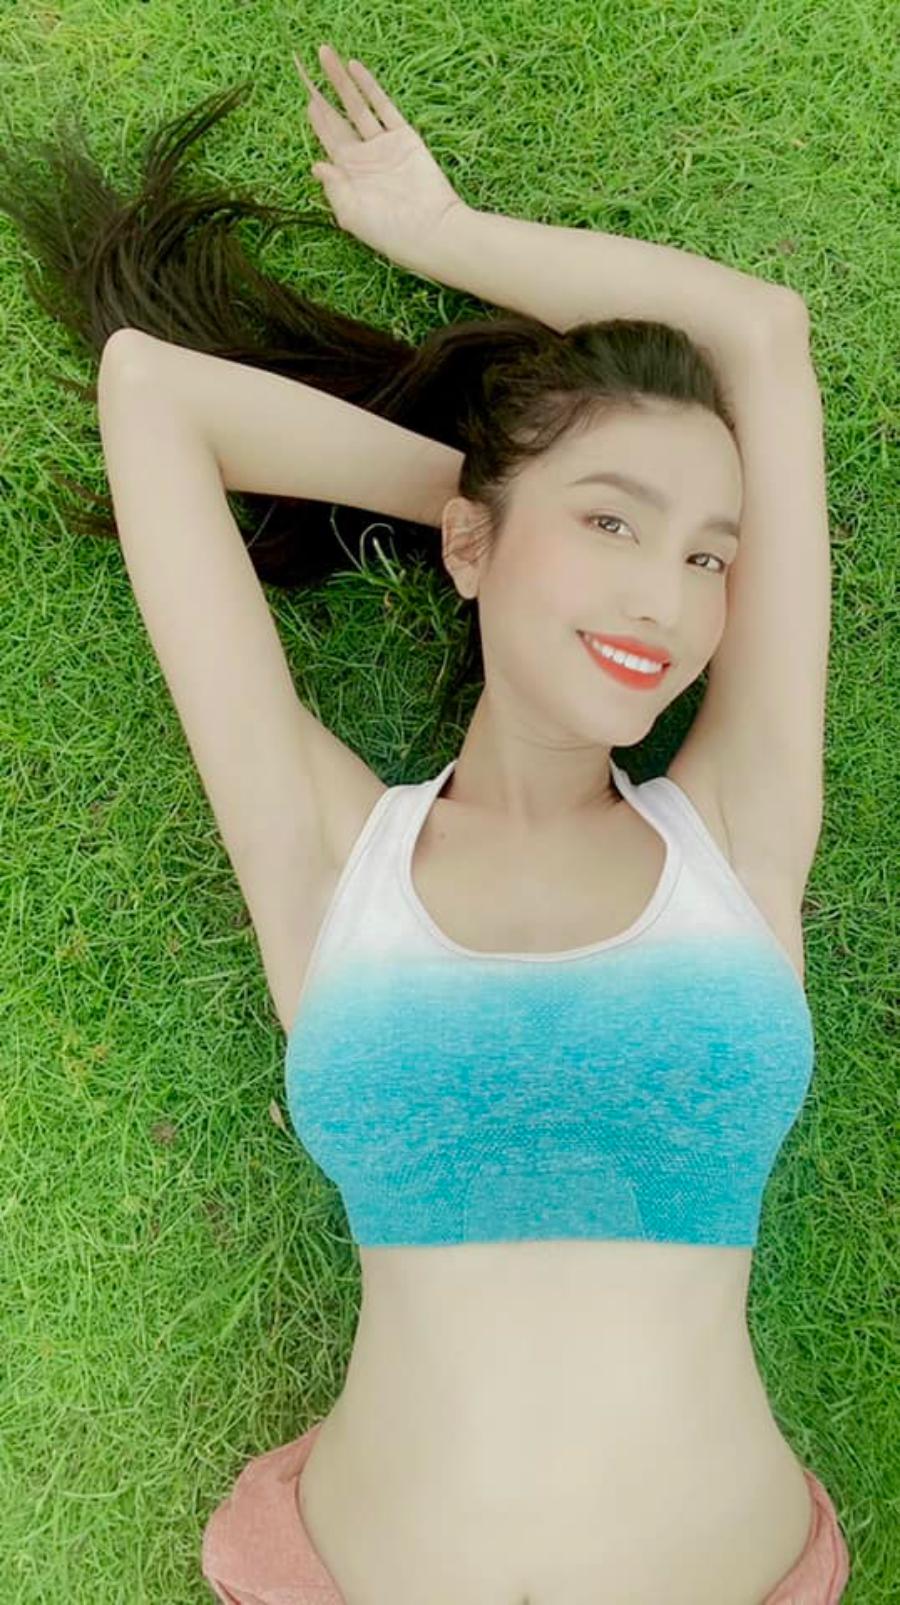 Diện đủ kiểu bikini khoe dáng nóng bỏng, Hoa hậu chuyển giới Việt Nam đầu tiên khiến dân tình xuýt xoa 'hết nước chấm' - Ảnh 7